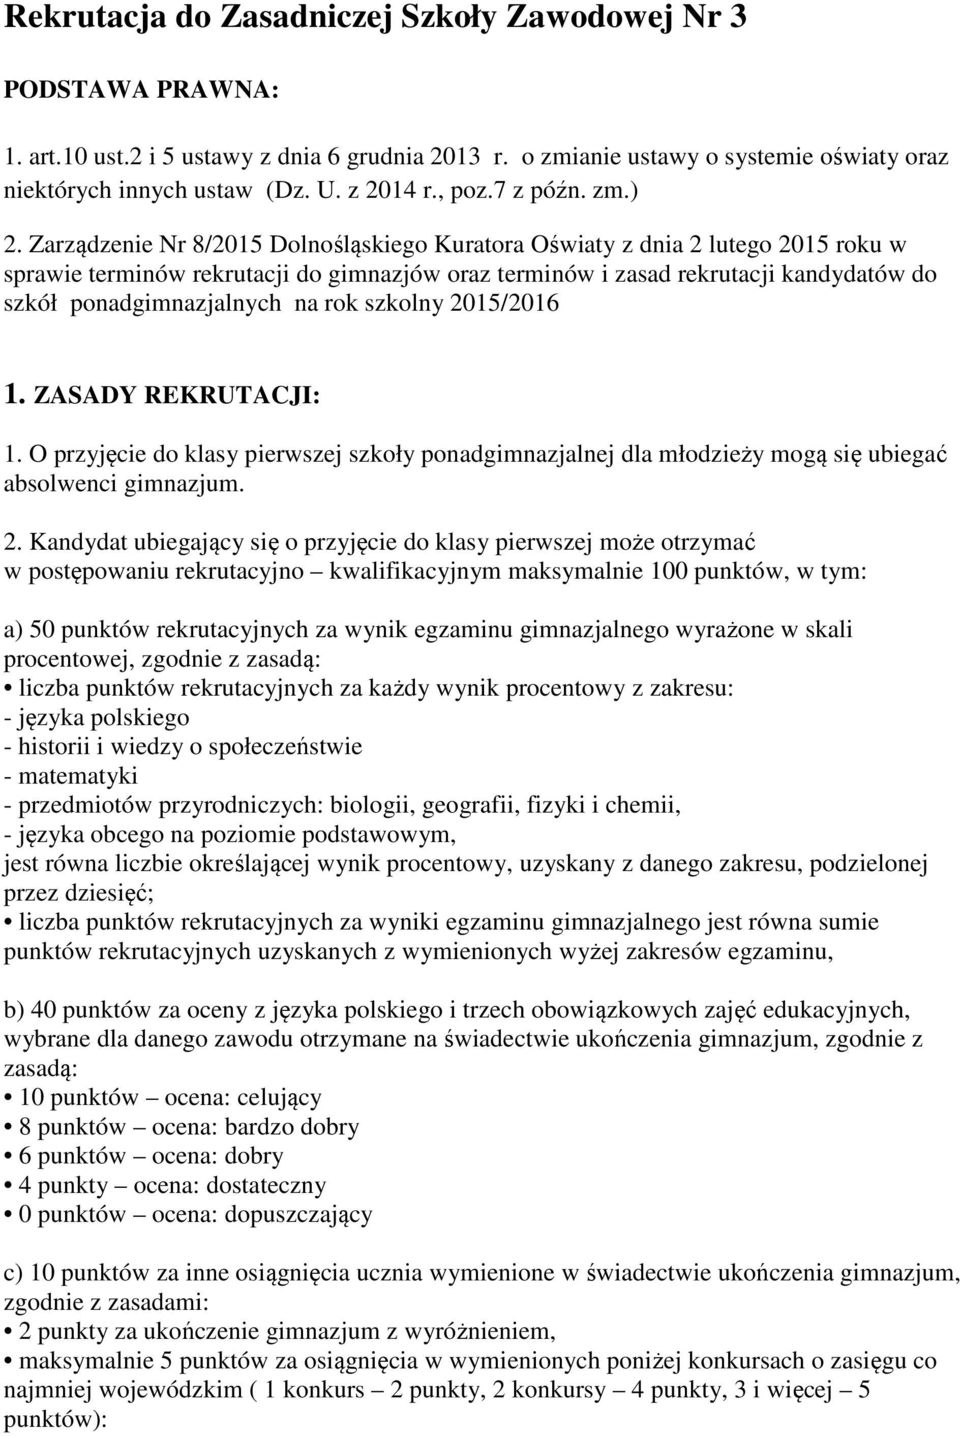 Zarządzenie Nr 8/2015 Dolnośląskiego Kuratora Oświaty z dnia 2 lutego 2015 roku w sprawie terminów rekrutacji do gimnazjów oraz terminów i zasad rekrutacji kandydatów do szkół ponadgimnazjalnych na